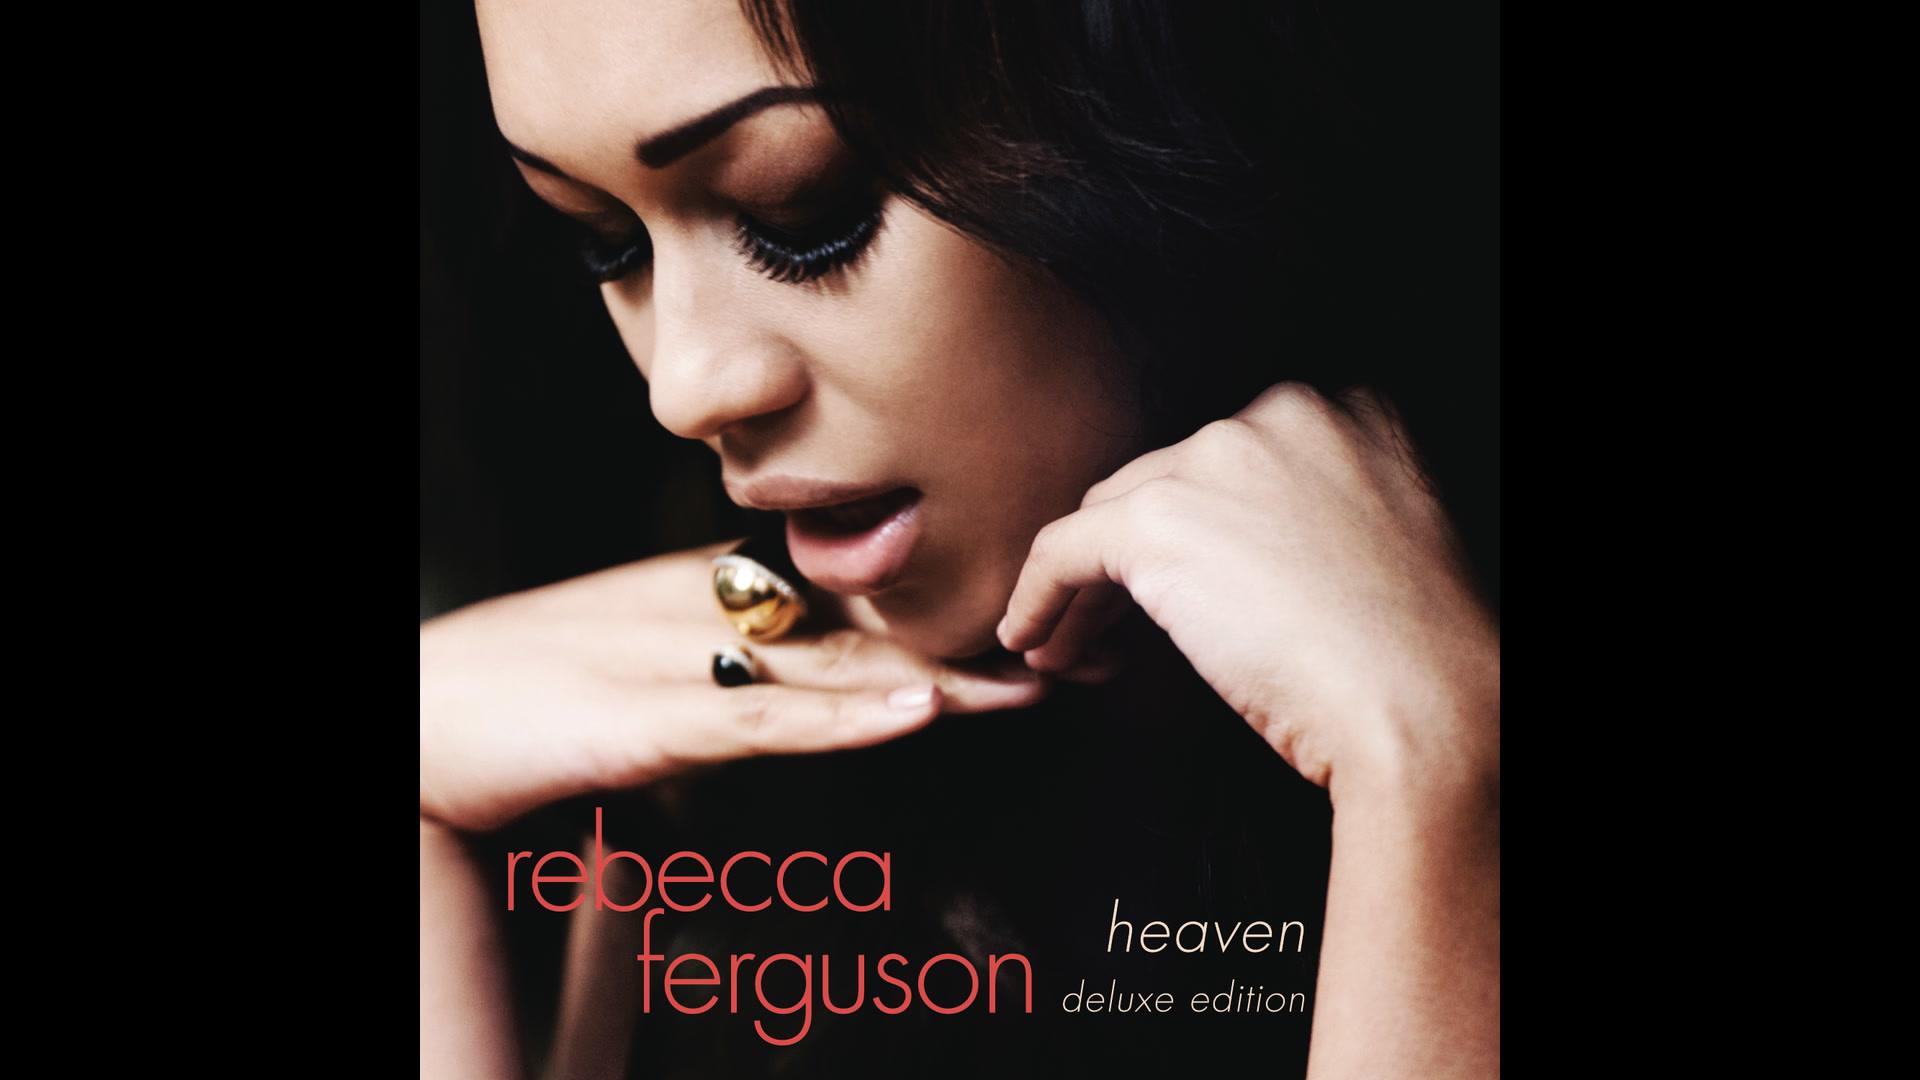 Rebecca Ferguson - Diamond to Stone (Official Audio)